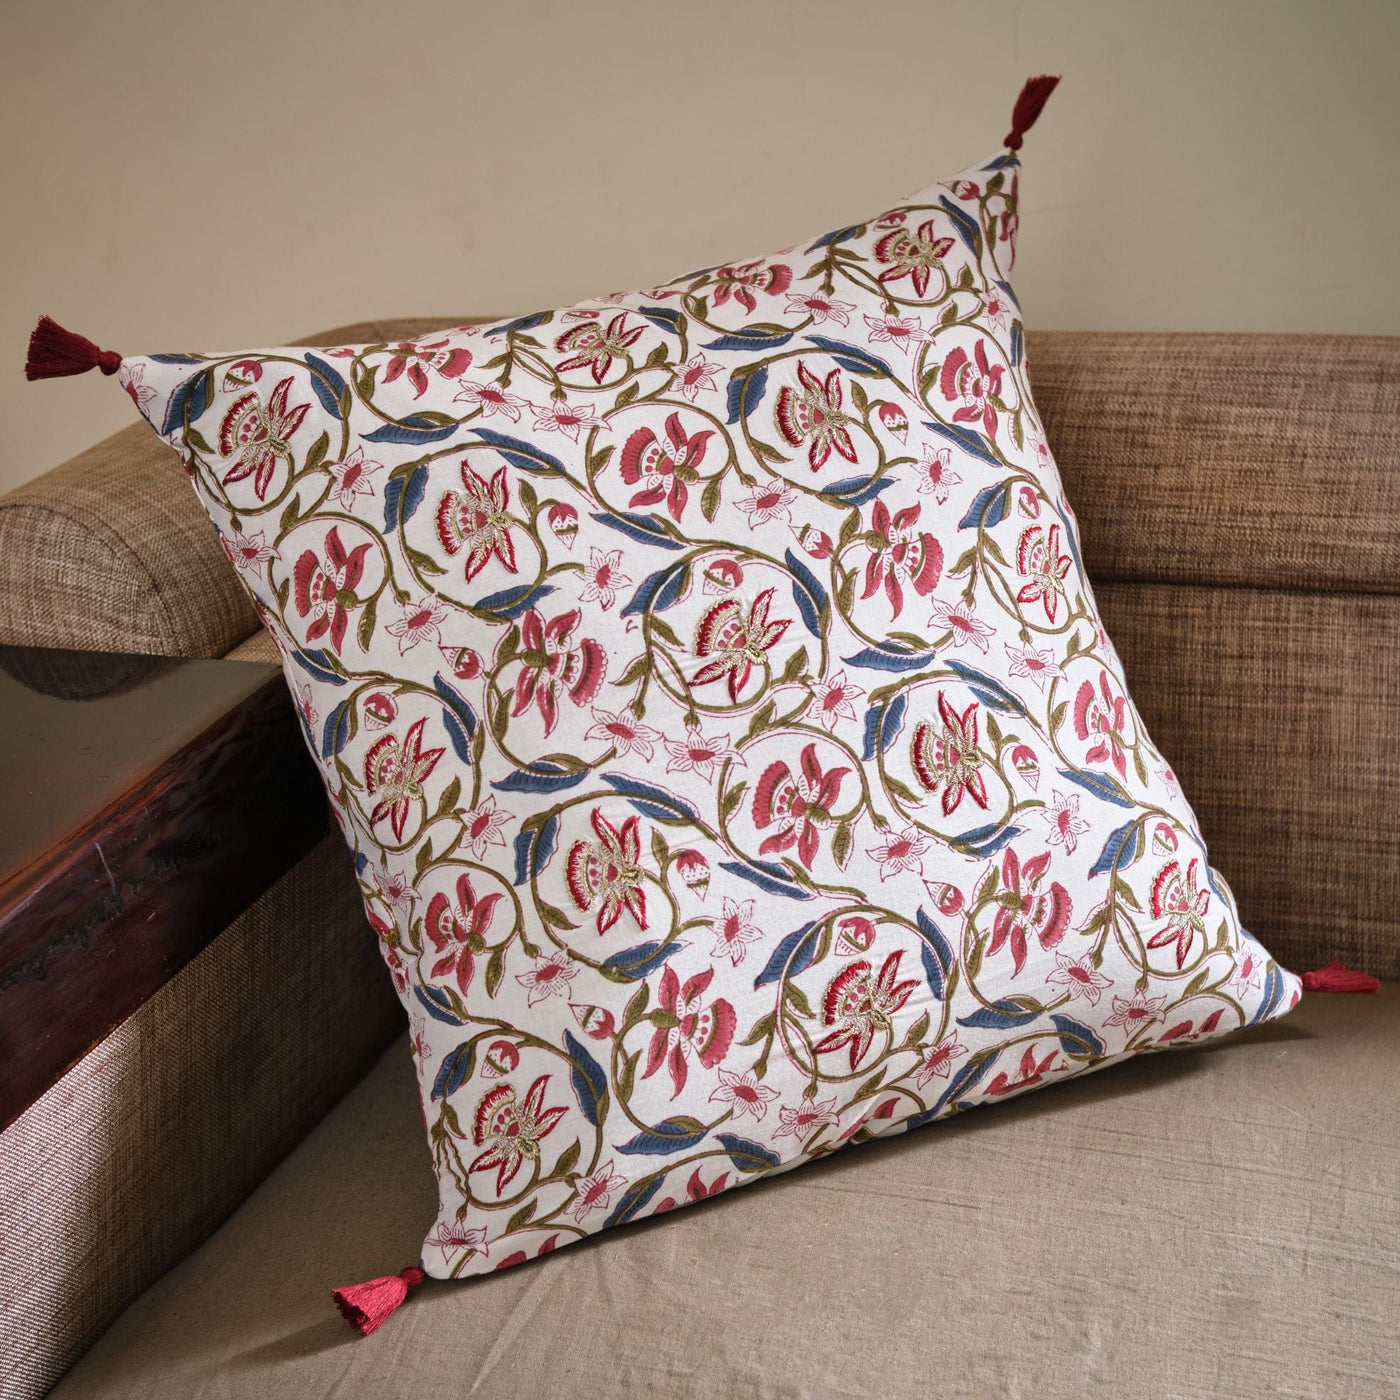 The Fabricrush  Pillowcases & Shams Julia Pillow Cushion Cover